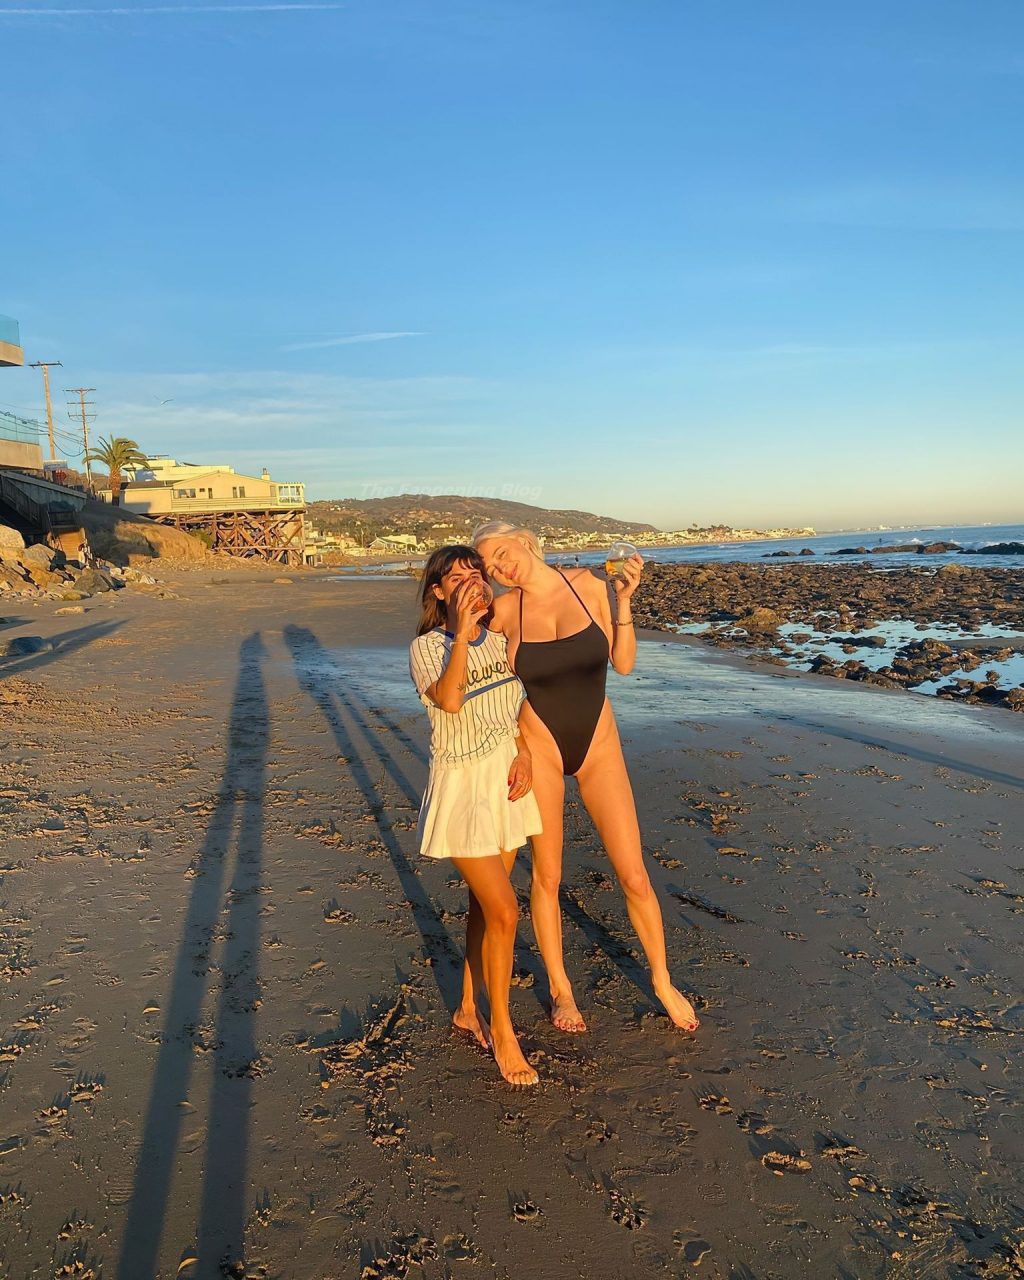 Busty Caroline Vreeland Enjoys a Day on the Beach (7 Photos)